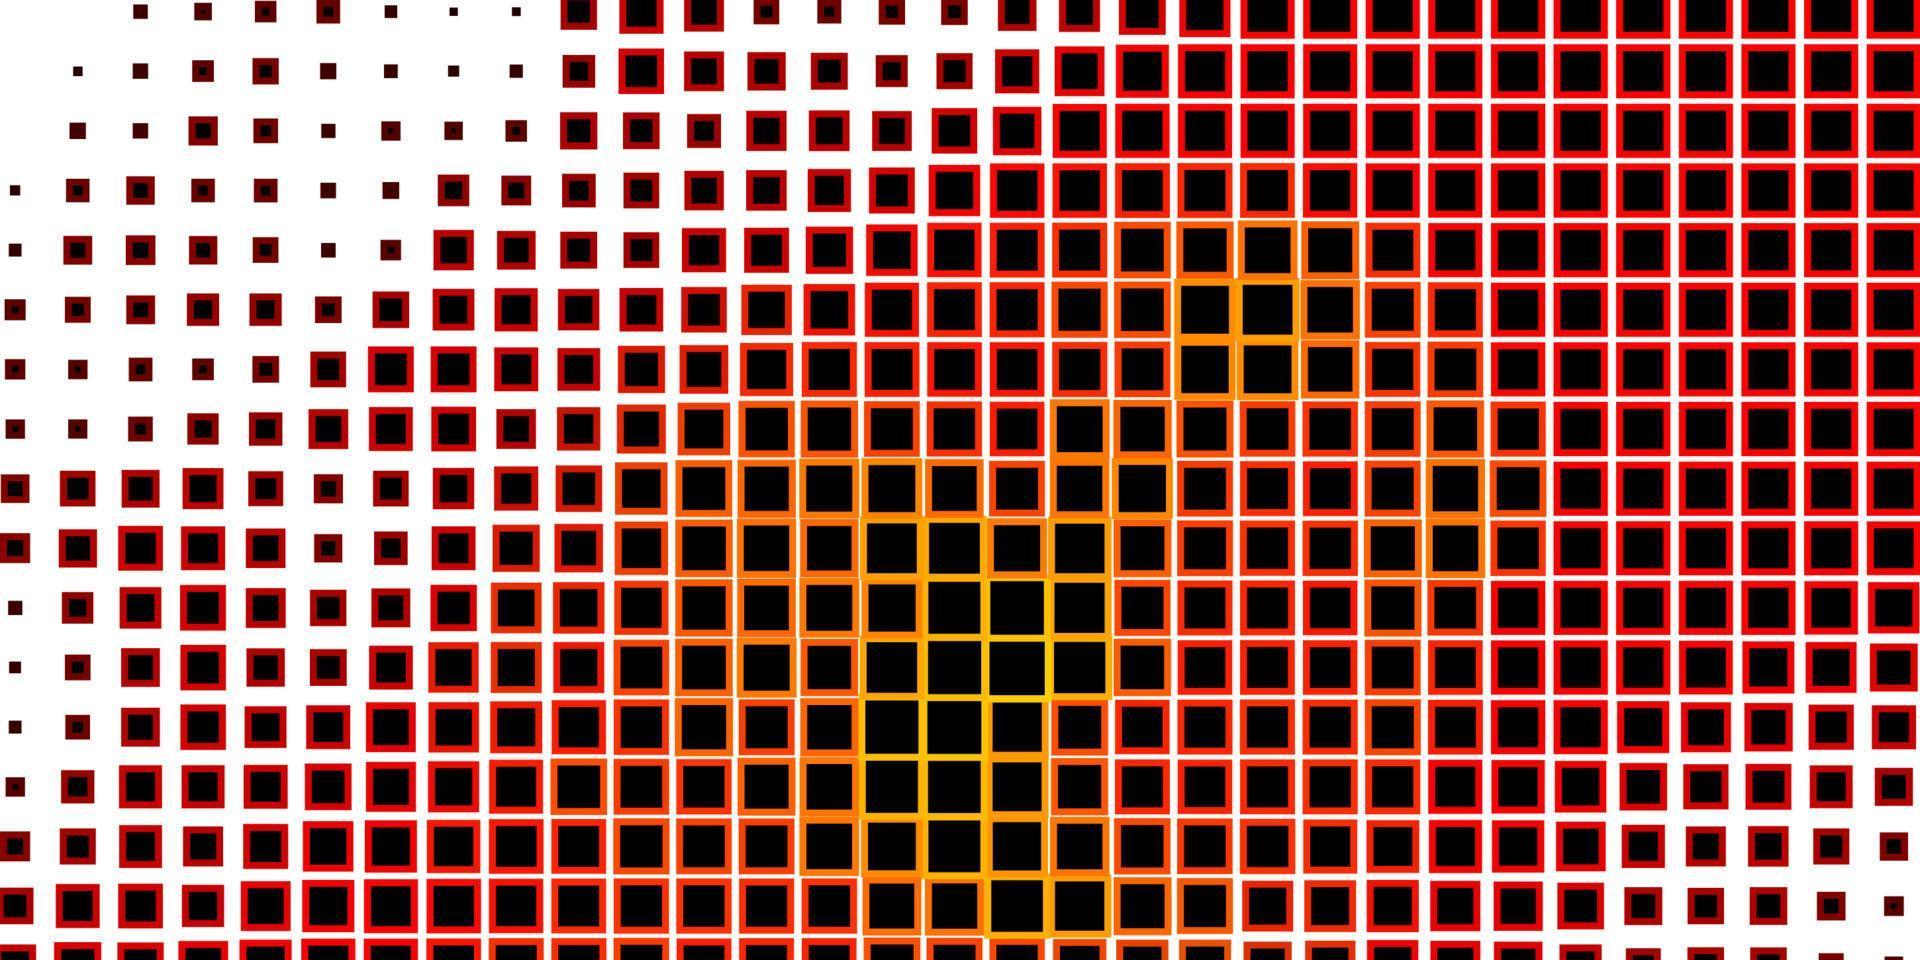 layout de vetor vermelho escuro com linhas, retângulos.